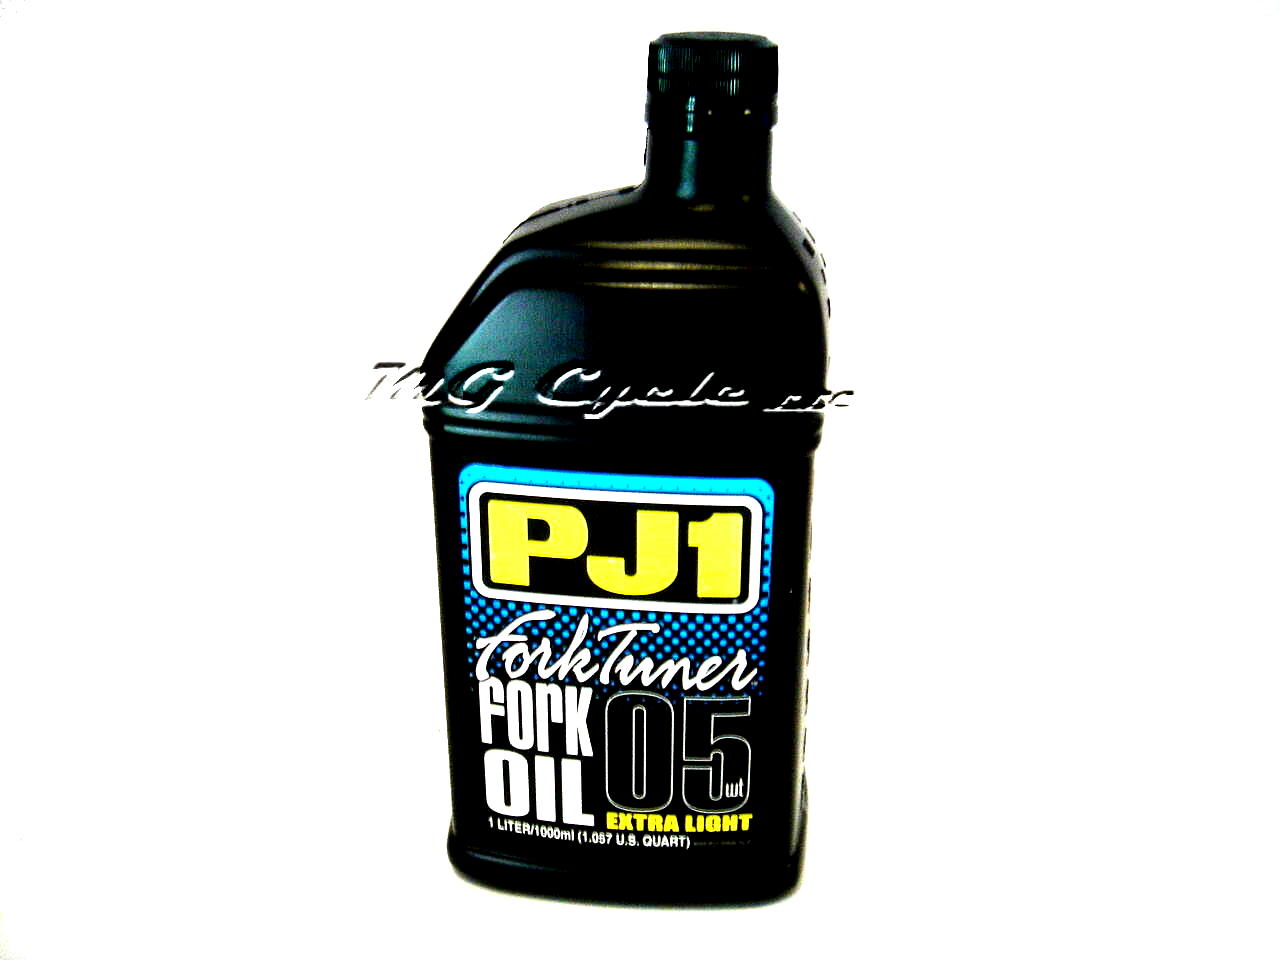 PJ1 Fork Tuner fork oil 5W extra light, 1 liter bottle